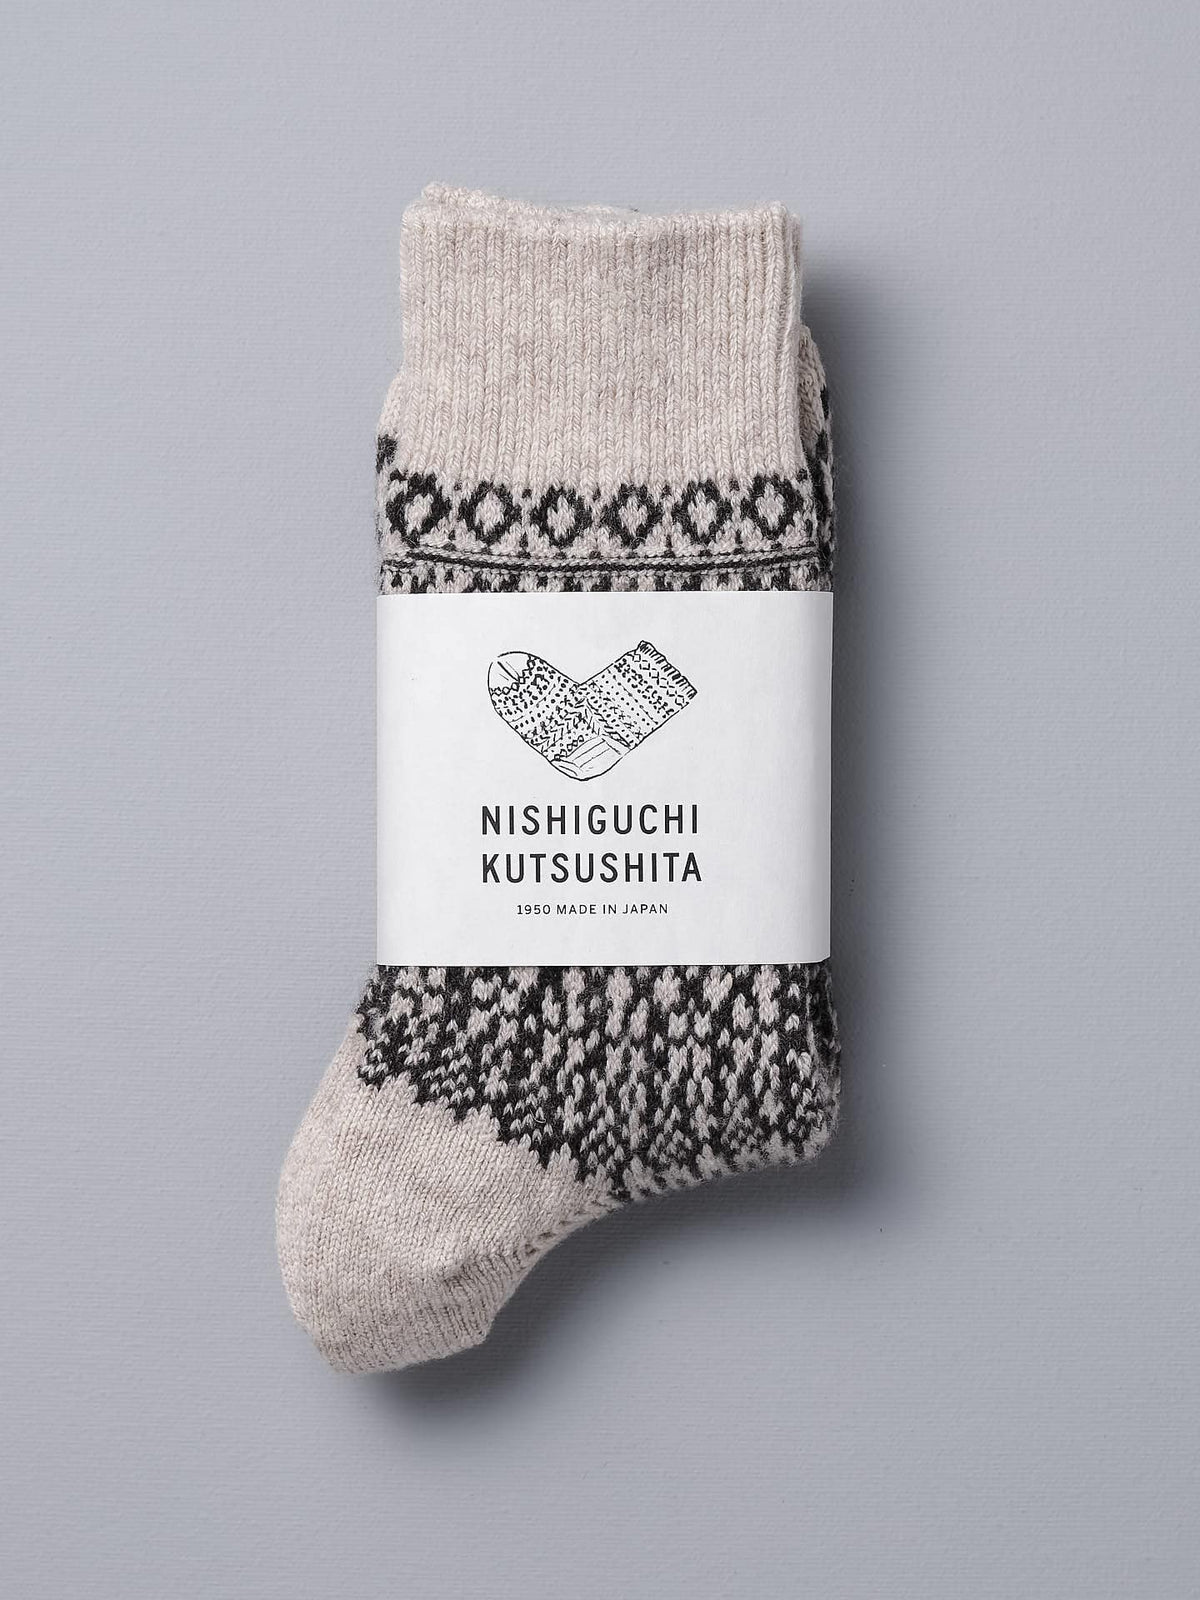 A pair of Nishiguchi Kutsushita Oslo Wool Jacquard Socks – Oatmeal with a black and white pattern.